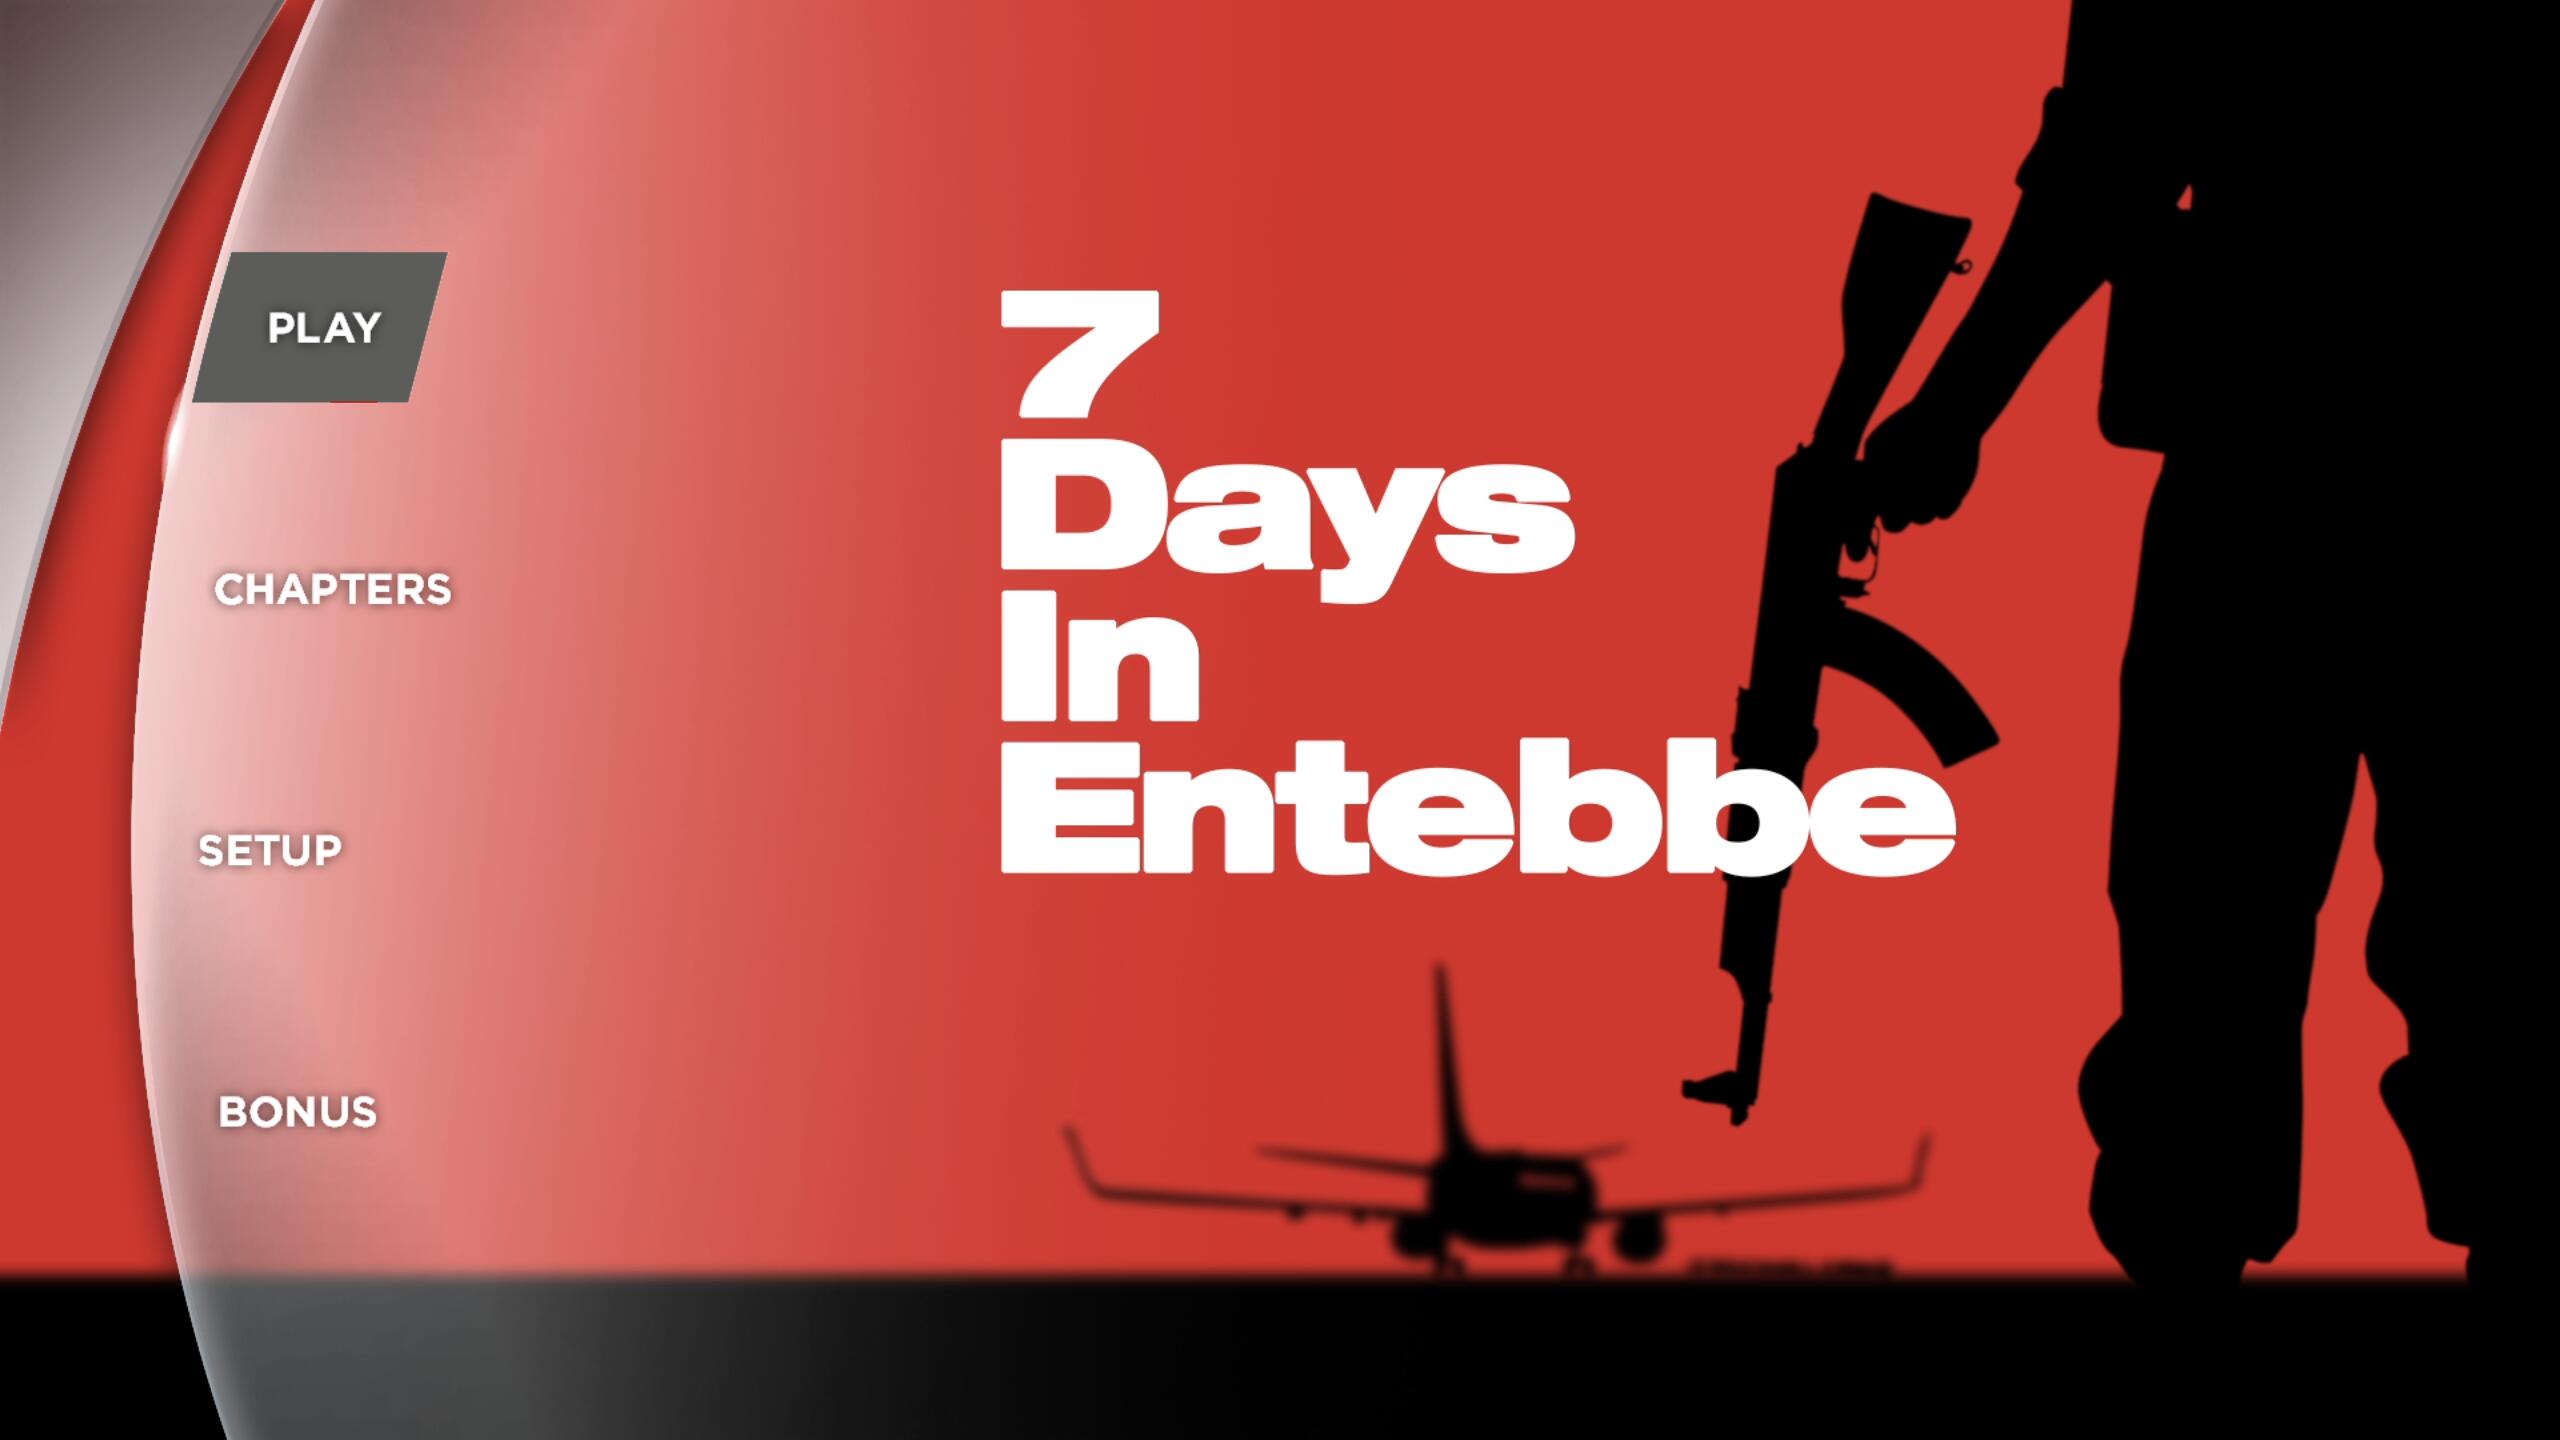 火狐一号反击[DIY原盘/简/繁/英双语殊效四字幕].7.Days.in.Entebbe.2018.1080p.Blu-ray.AVC.DTS-HD.MA.5.1-Byakuya@CHDBits 38.1GB-6.jpg